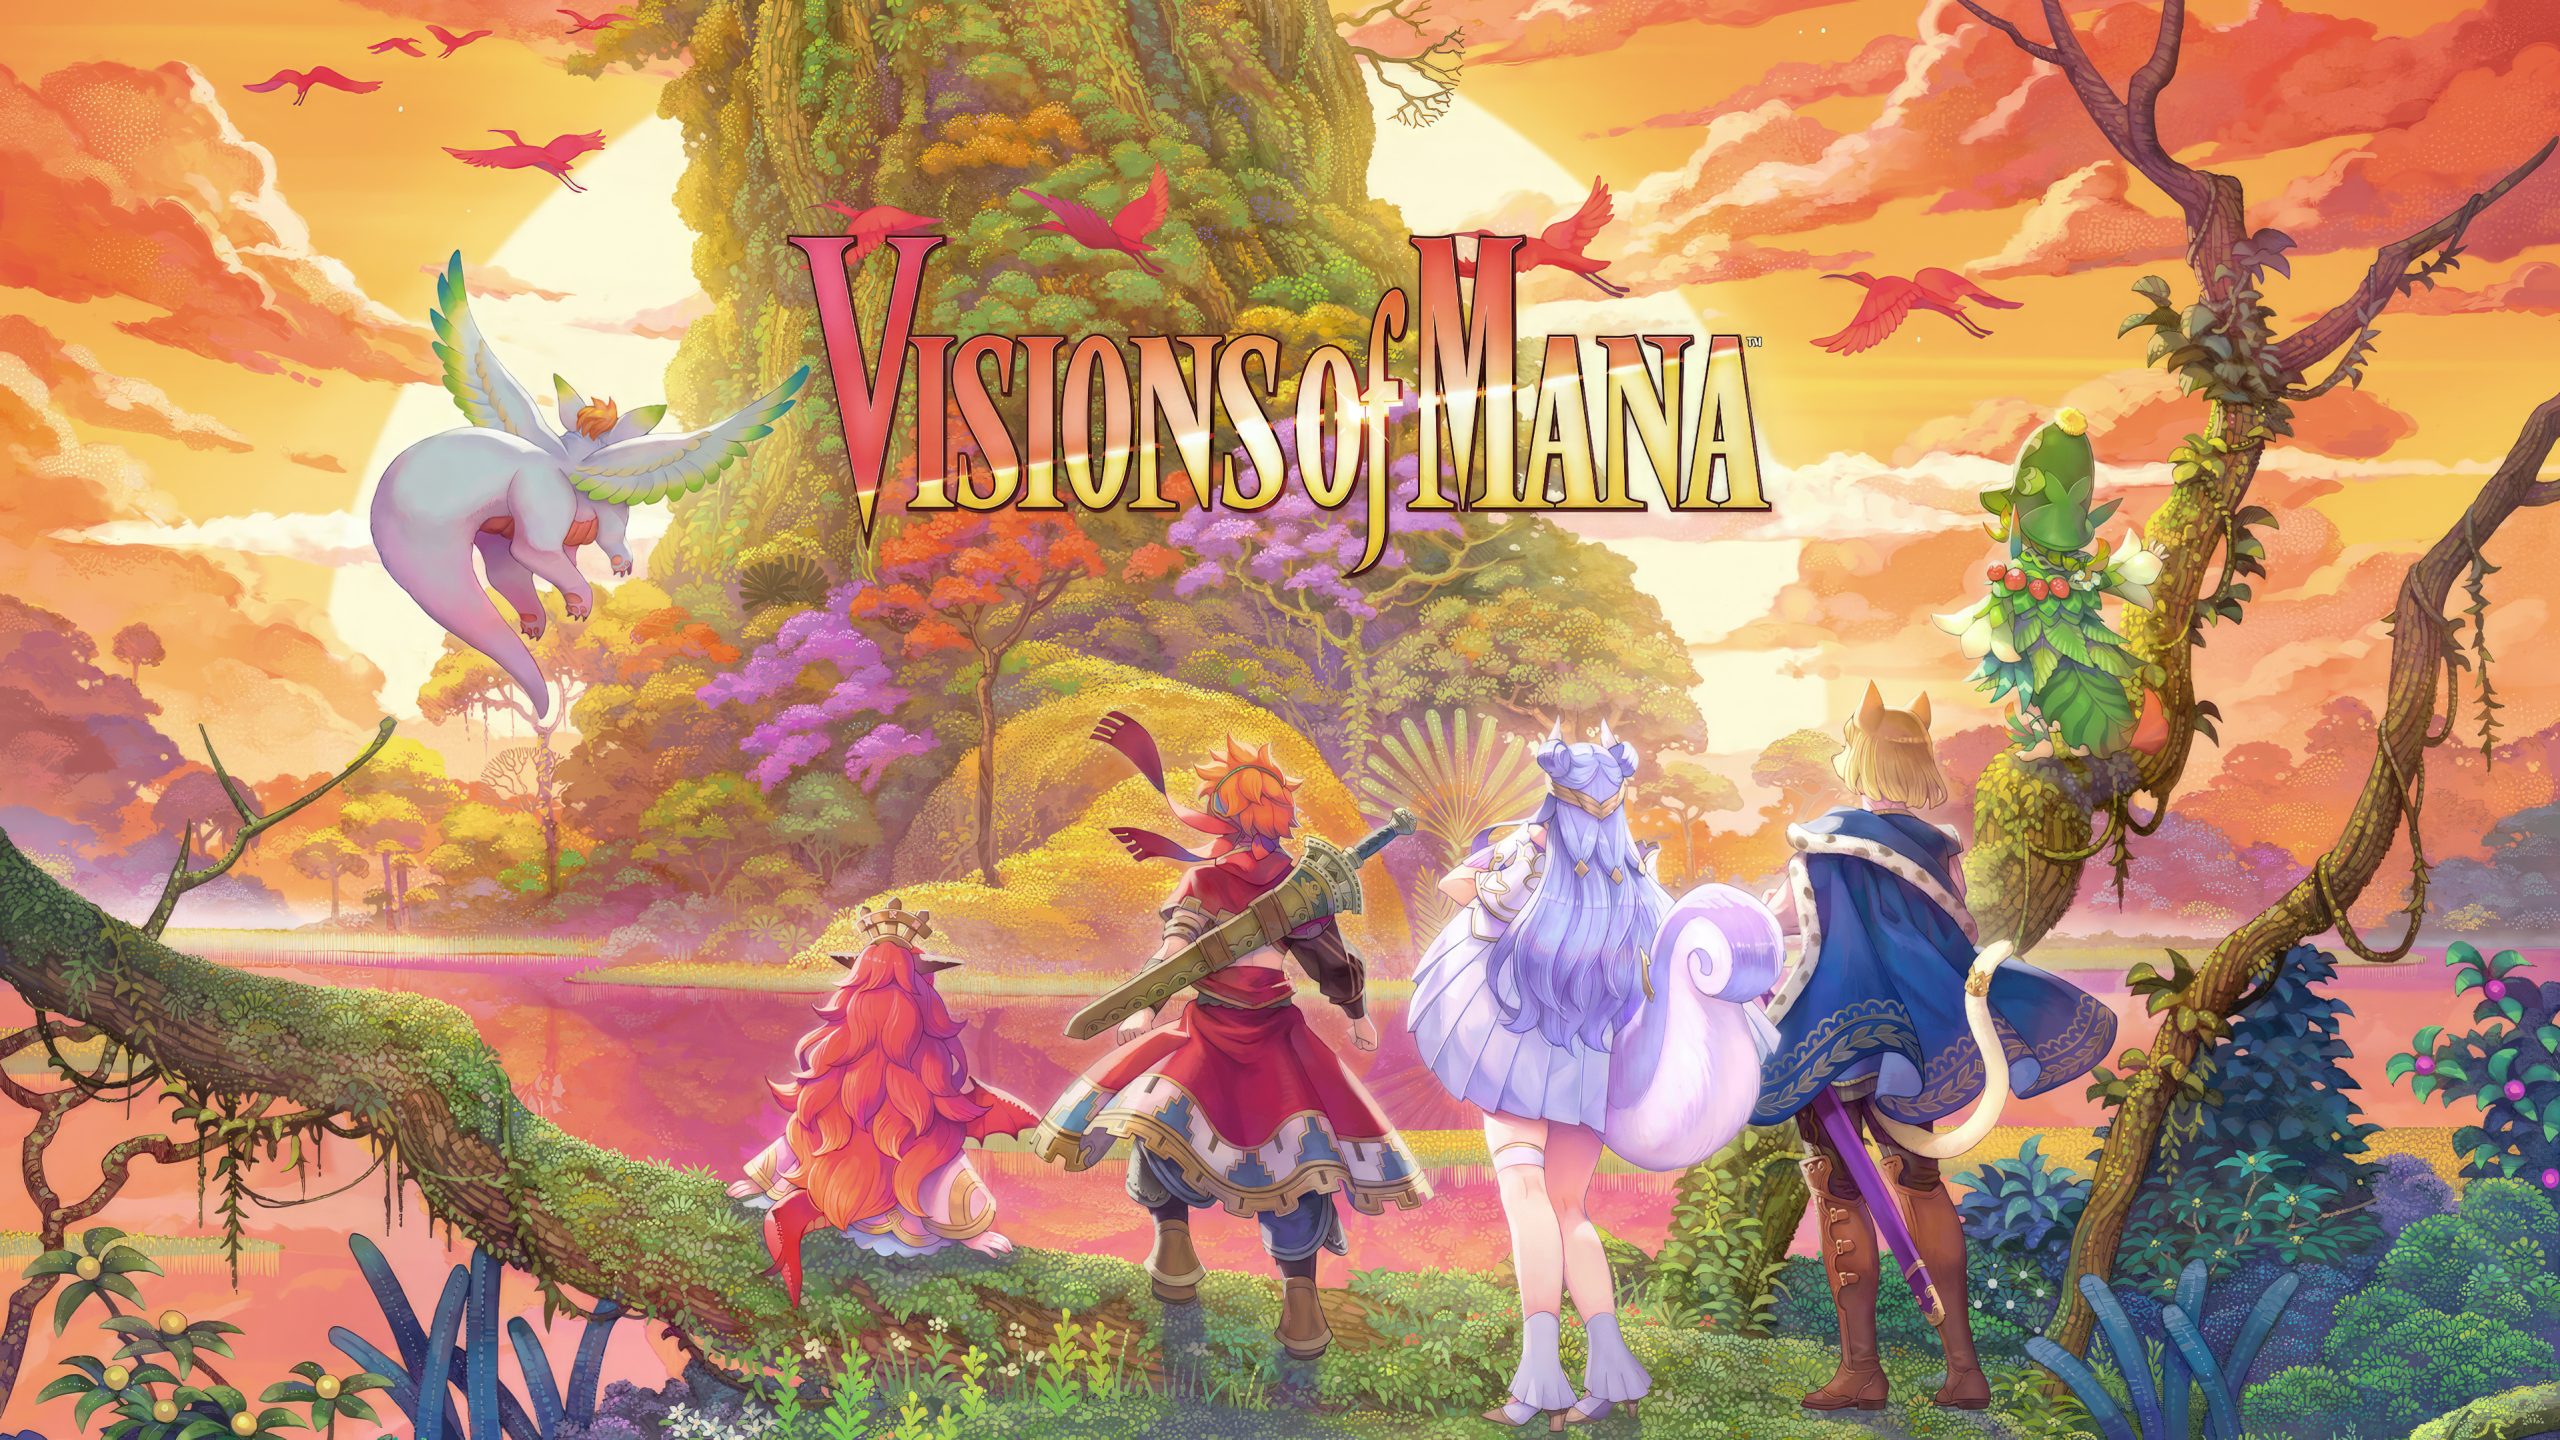 Visions of Mana نسخه ی نمایشی اکنون روی رایانه شخصی، پلی استیشن و ایکس باکس منتشر شد